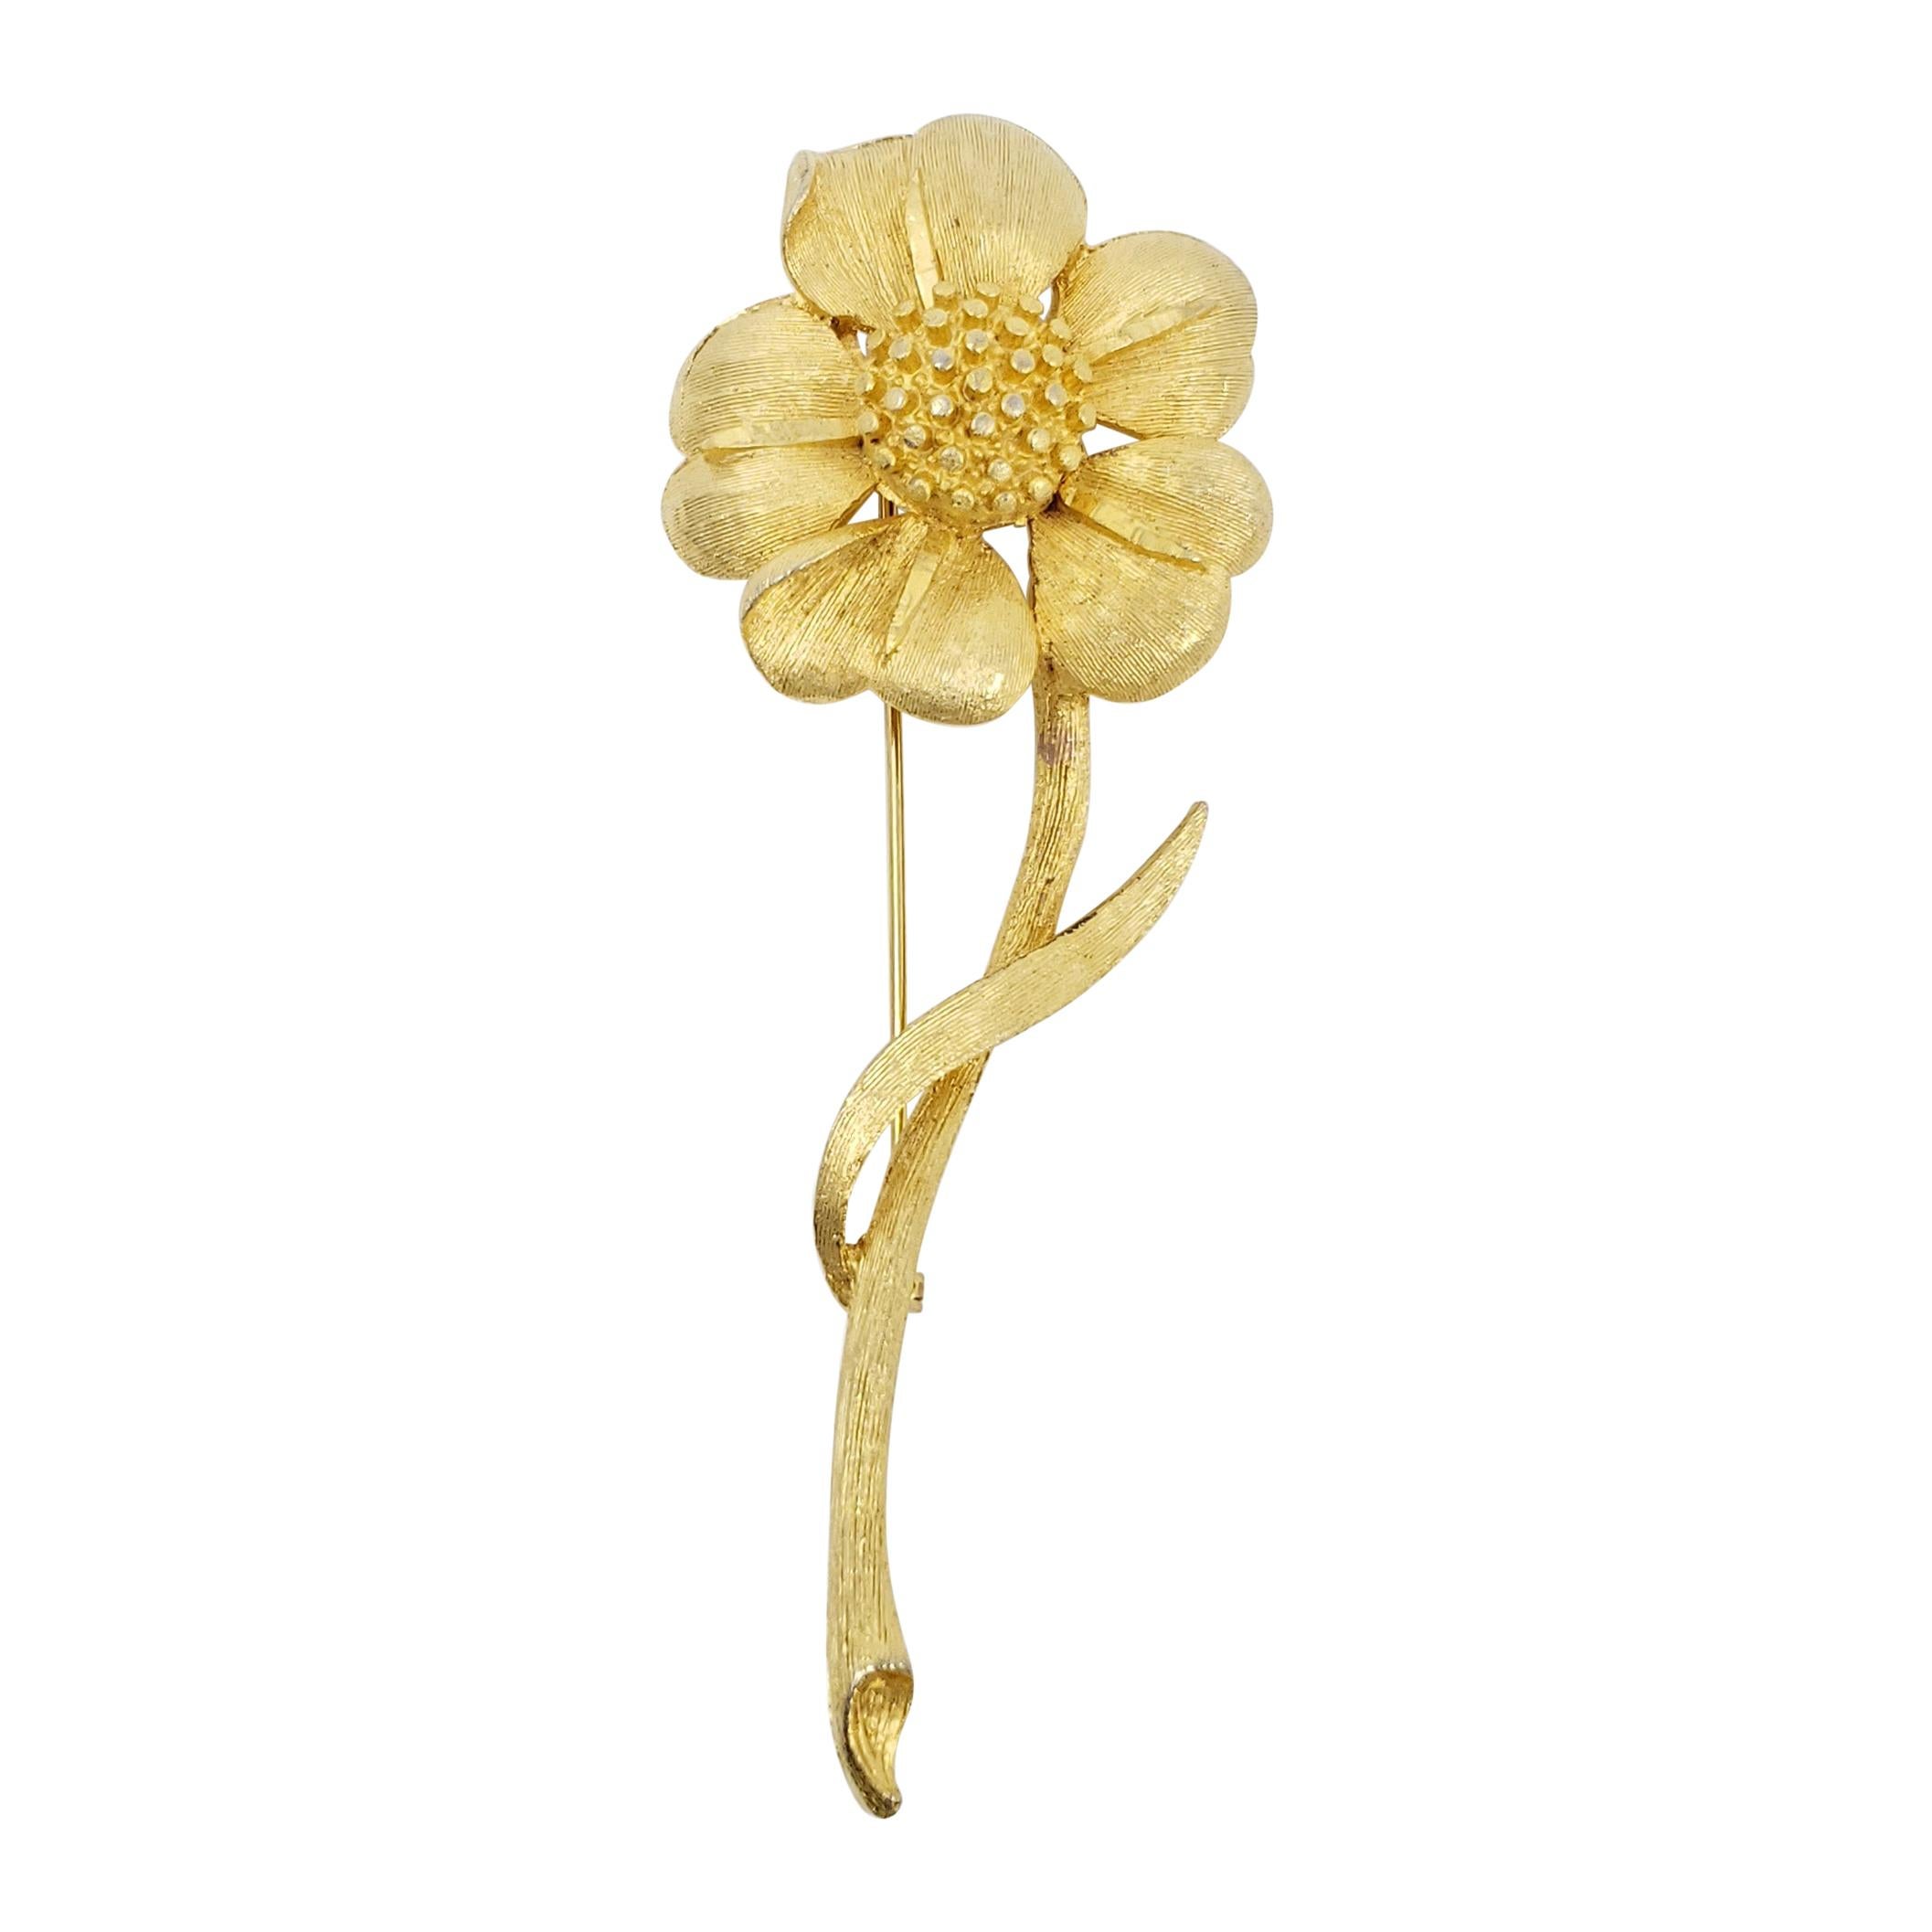 Bsk Gold Vintage Flower Brooch Mid 1900s Pin Retro